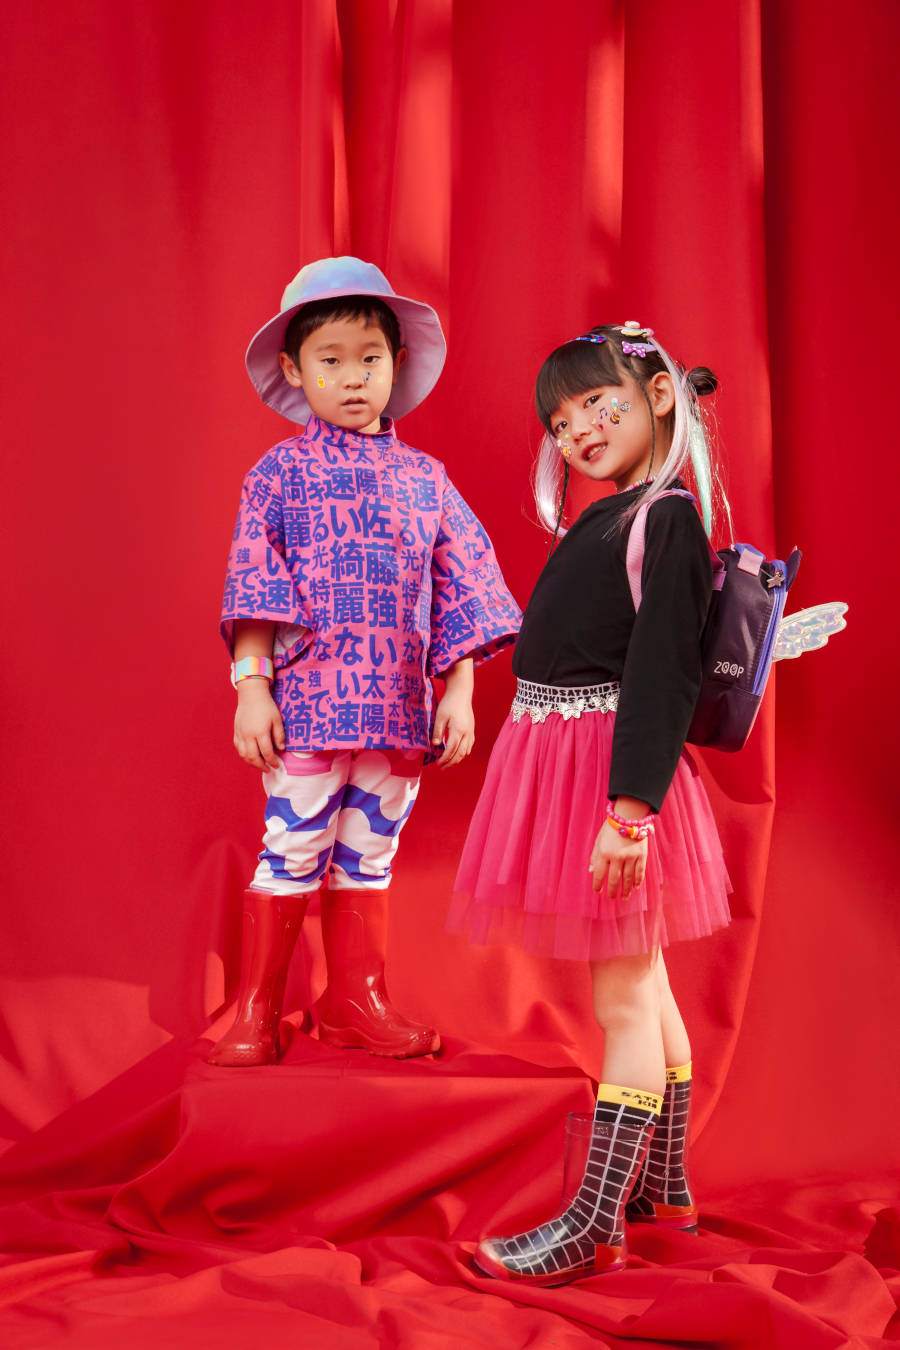 Foto de duas crianças asiáticas na campanha da marca da Sabrina Sato. O fundo da imagem é vermelho